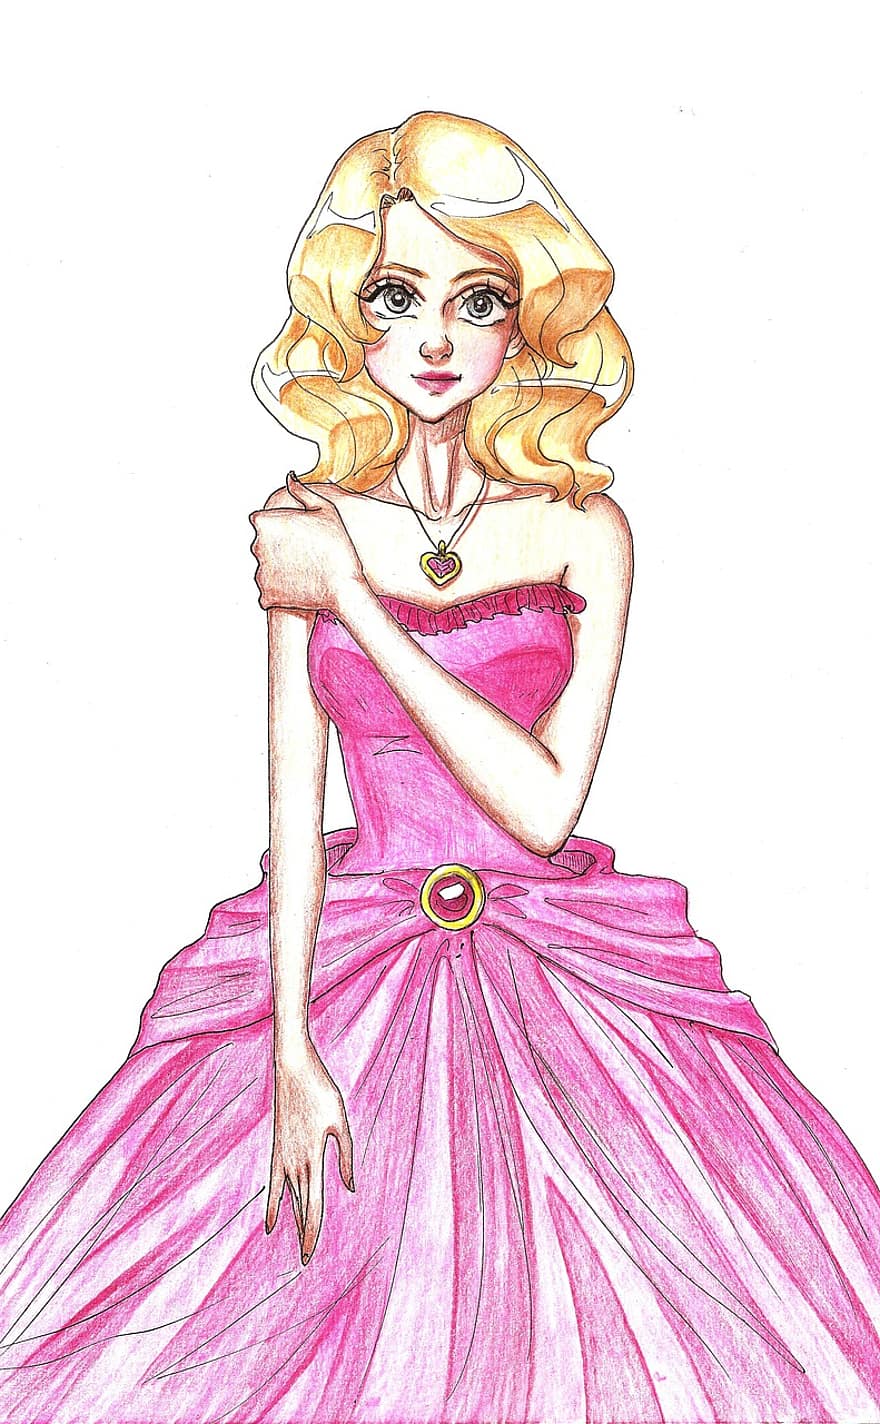 जवान महिला, एक राजकुमारी, लड़की, चित्रकारी, गुलाबी, परिधान, गोरा, नमूना, महिलाओं, फैशन, चित्रण